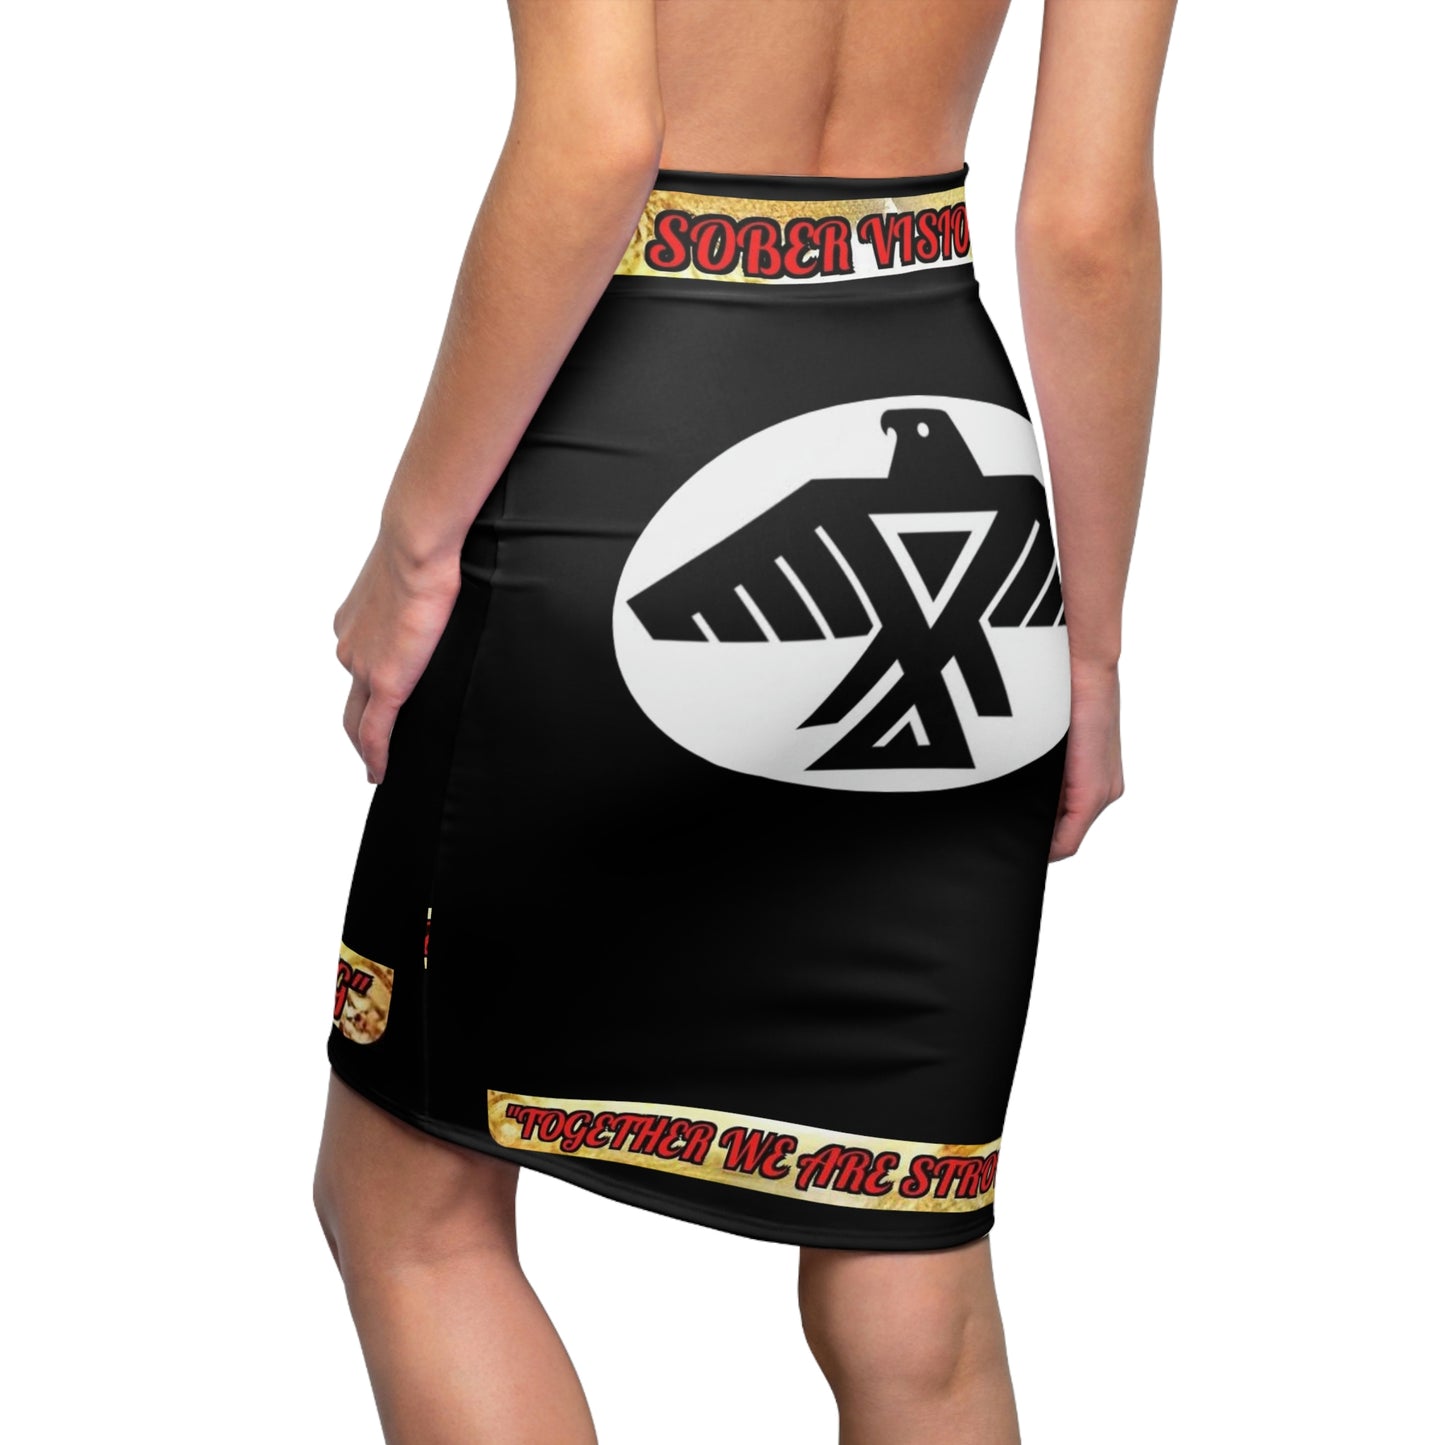 Women's Sober Visionz mini Skirt